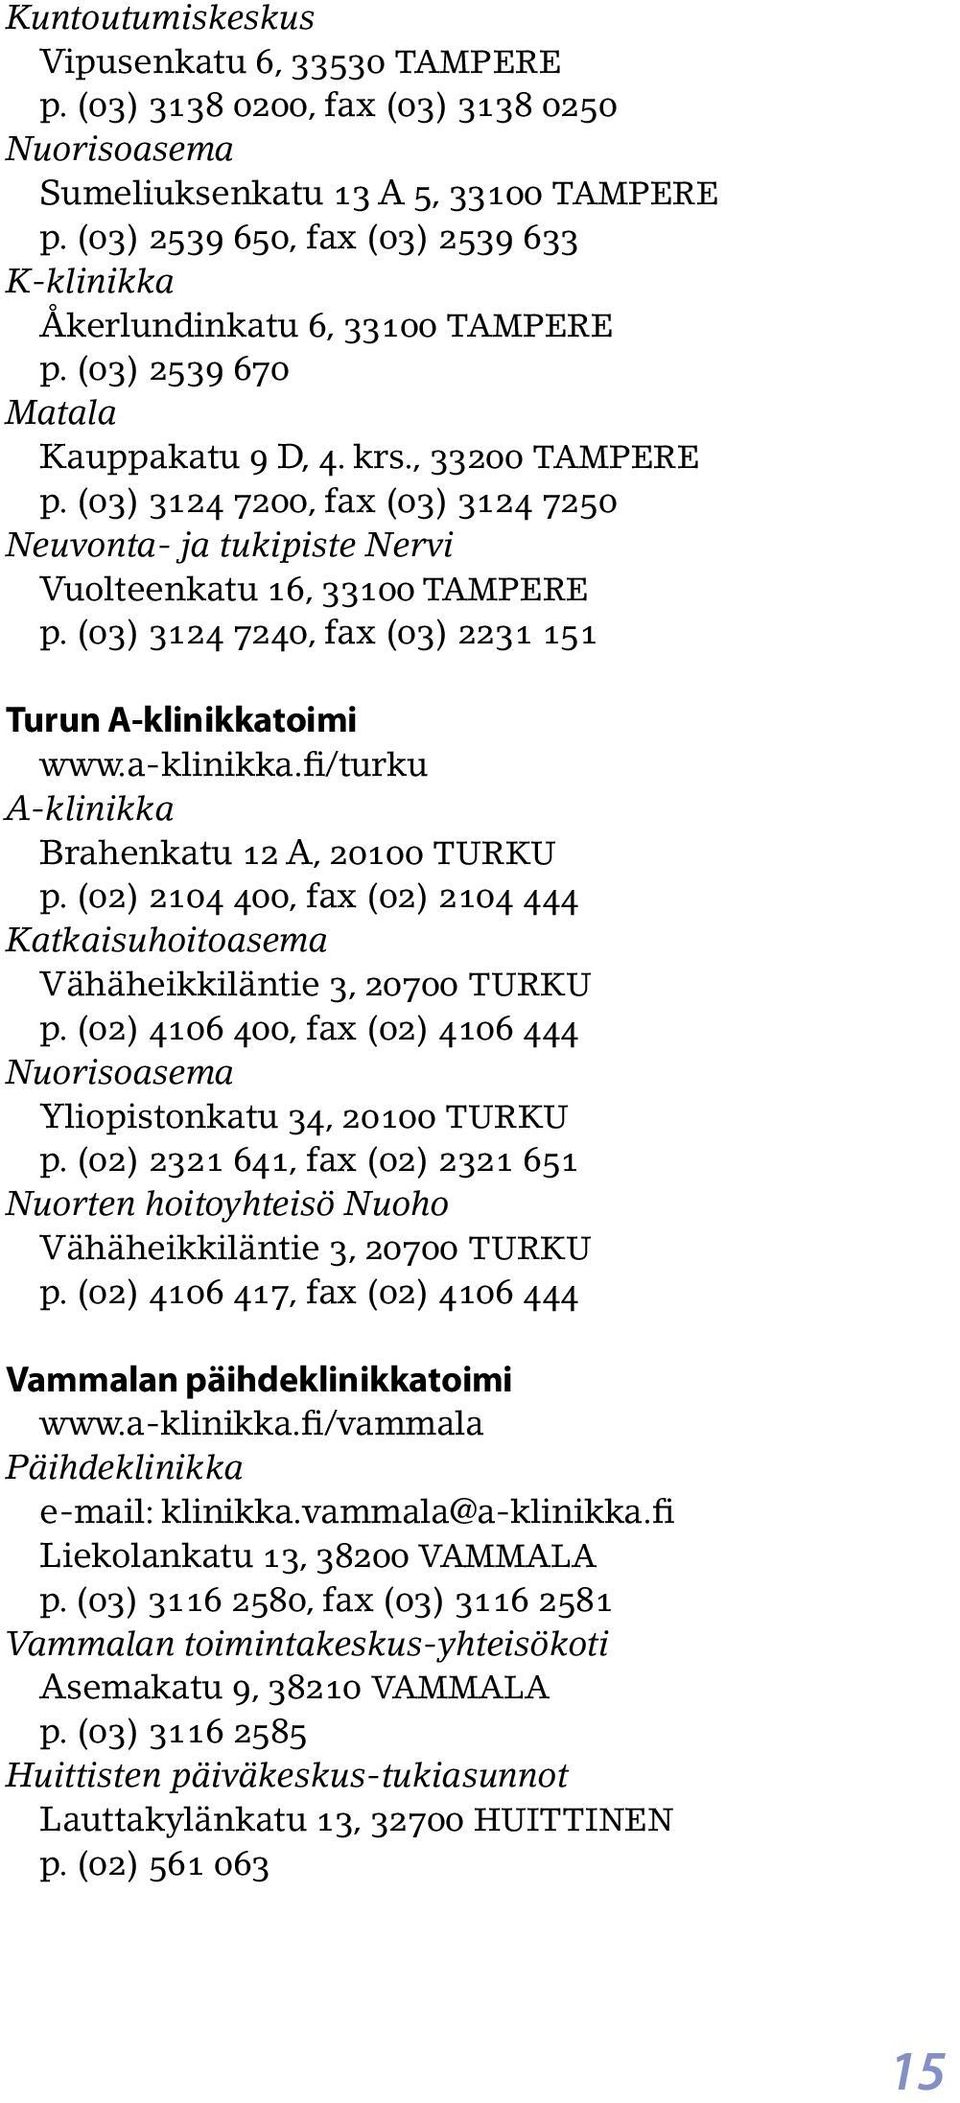 (03) 3124 7200, fax (03) 3124 7250 Neuvonta- ja tukipiste Nervi Vuolteenkatu 16, 33100 TAMPERE p. (03) 3124 7240, fax (03) 2231 151 Turun toimi www.a-klinikka.fi/turku Brahenkatu 12 A, 20100 TURKU p.